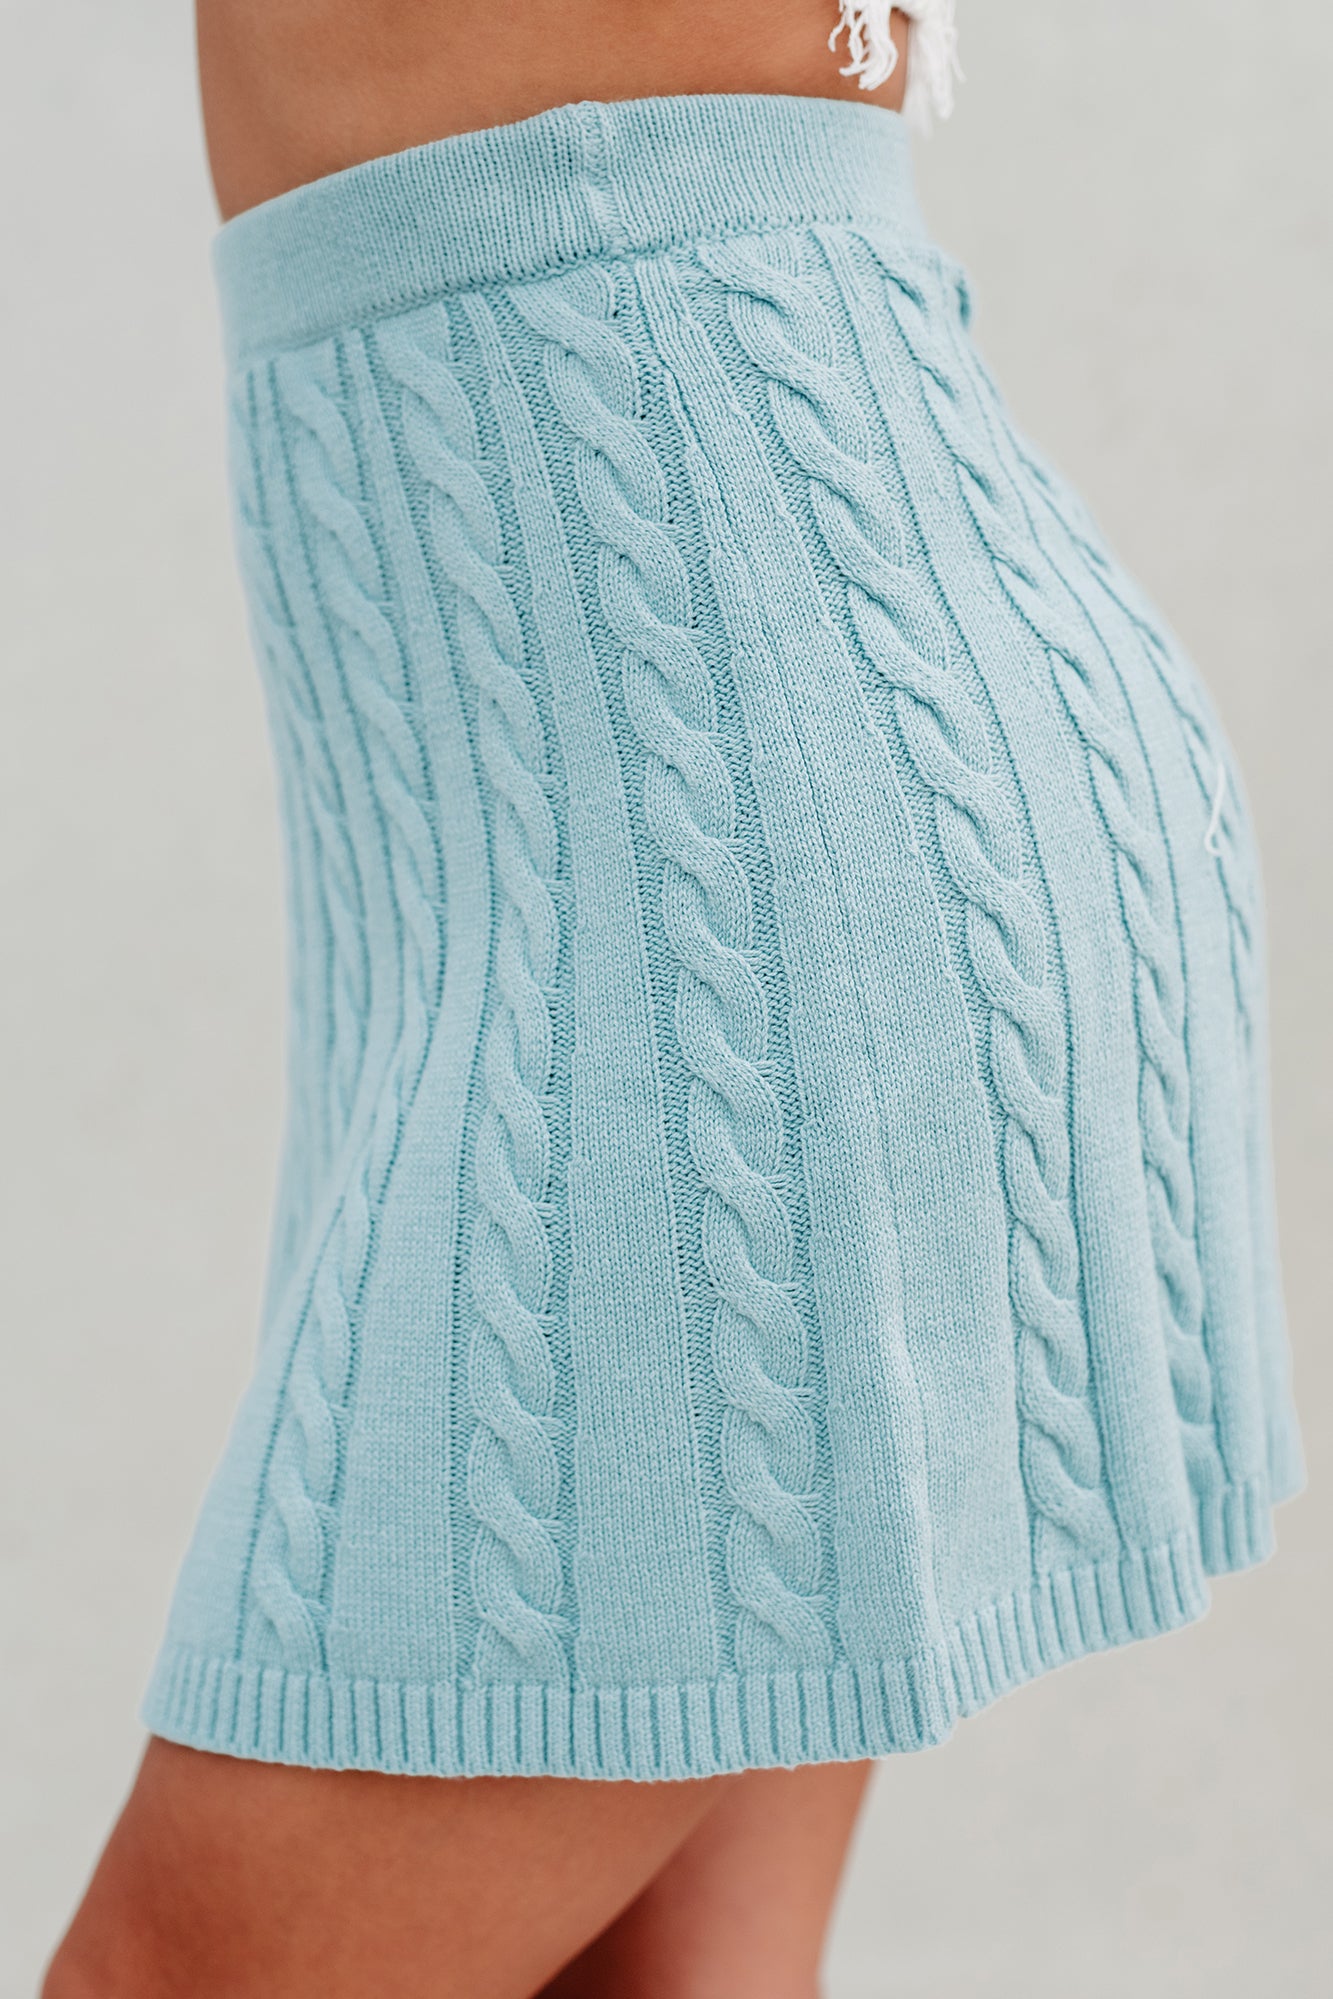 Everlasting Hope Cable Knit Mini Skirt (Blue) - NanaMacs